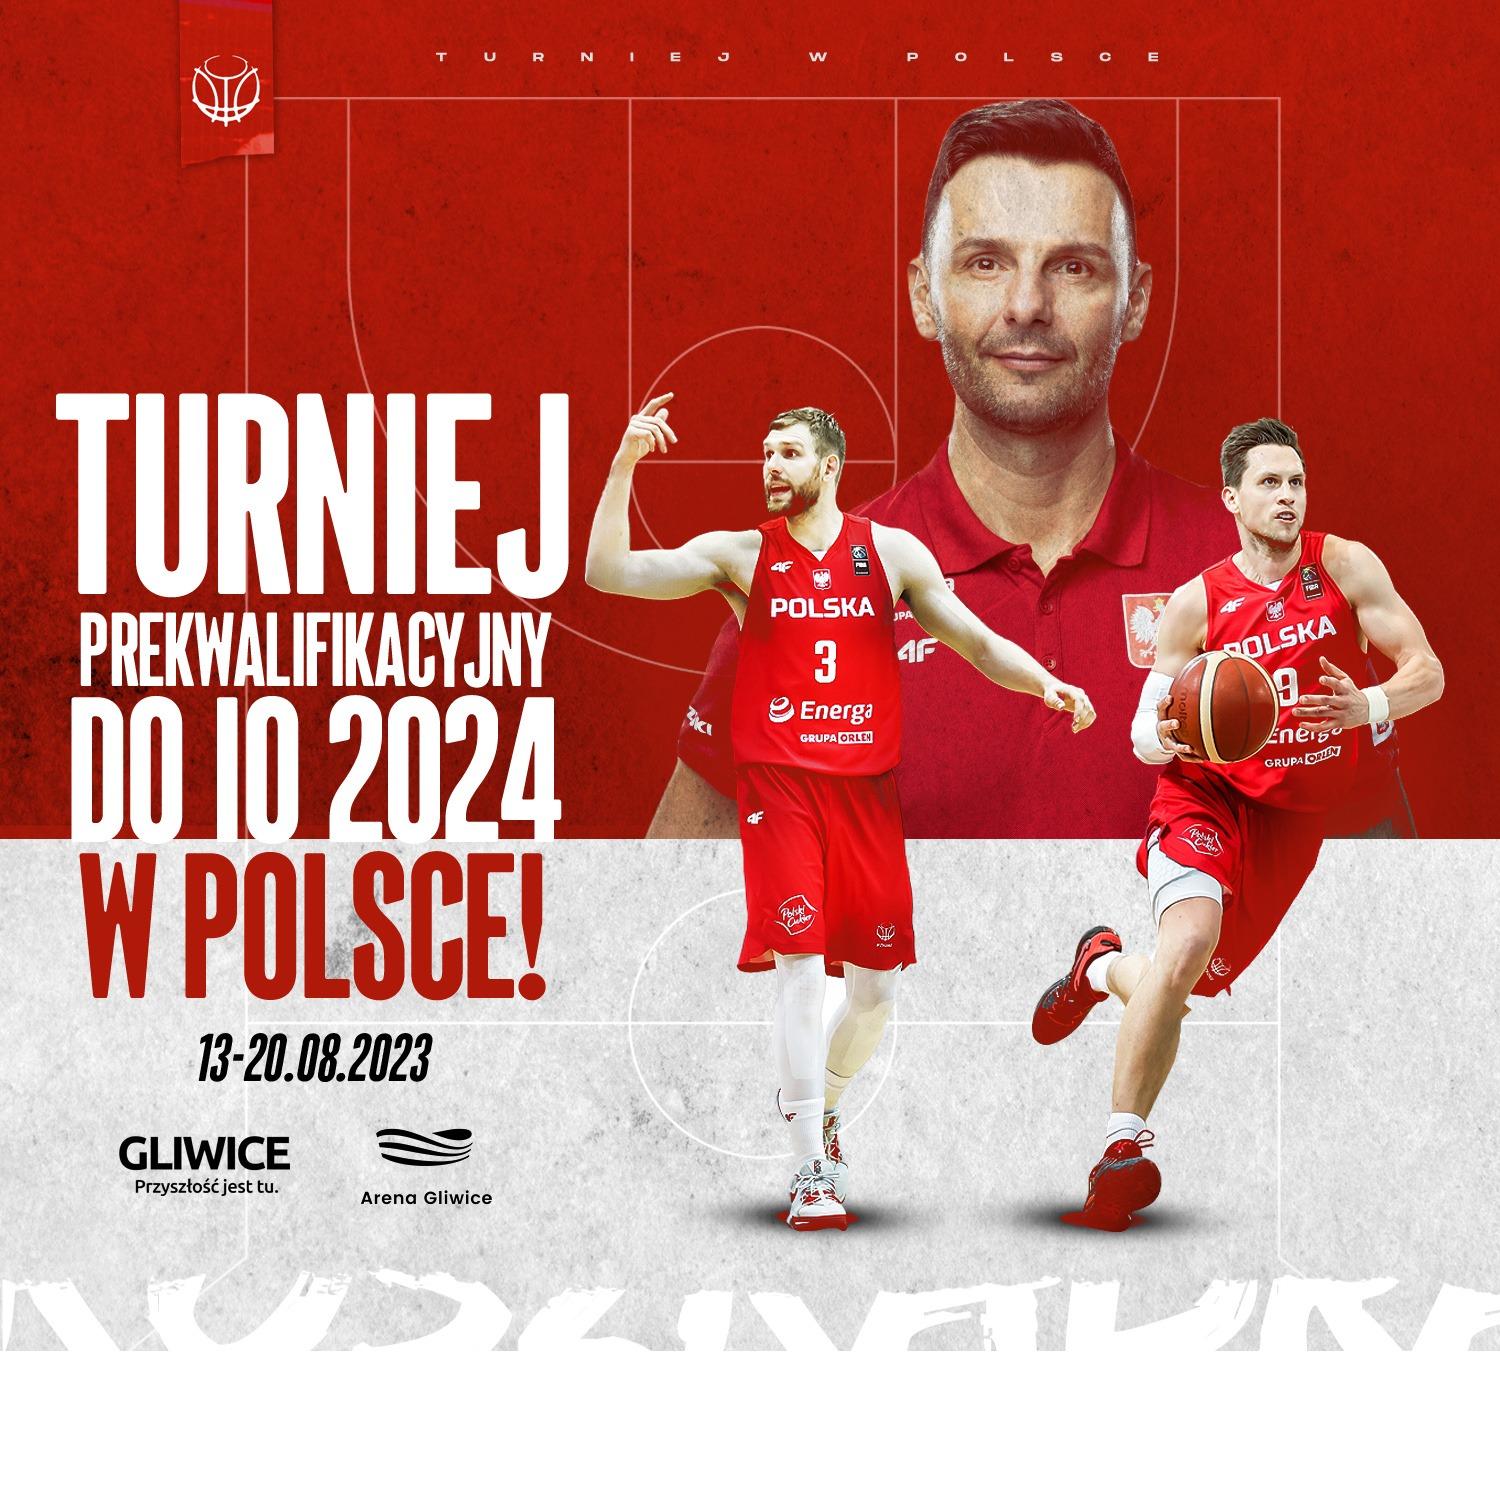 Turniej prekwalifikacyjny do Igrzysk Olimpijskich w Gliwicach!